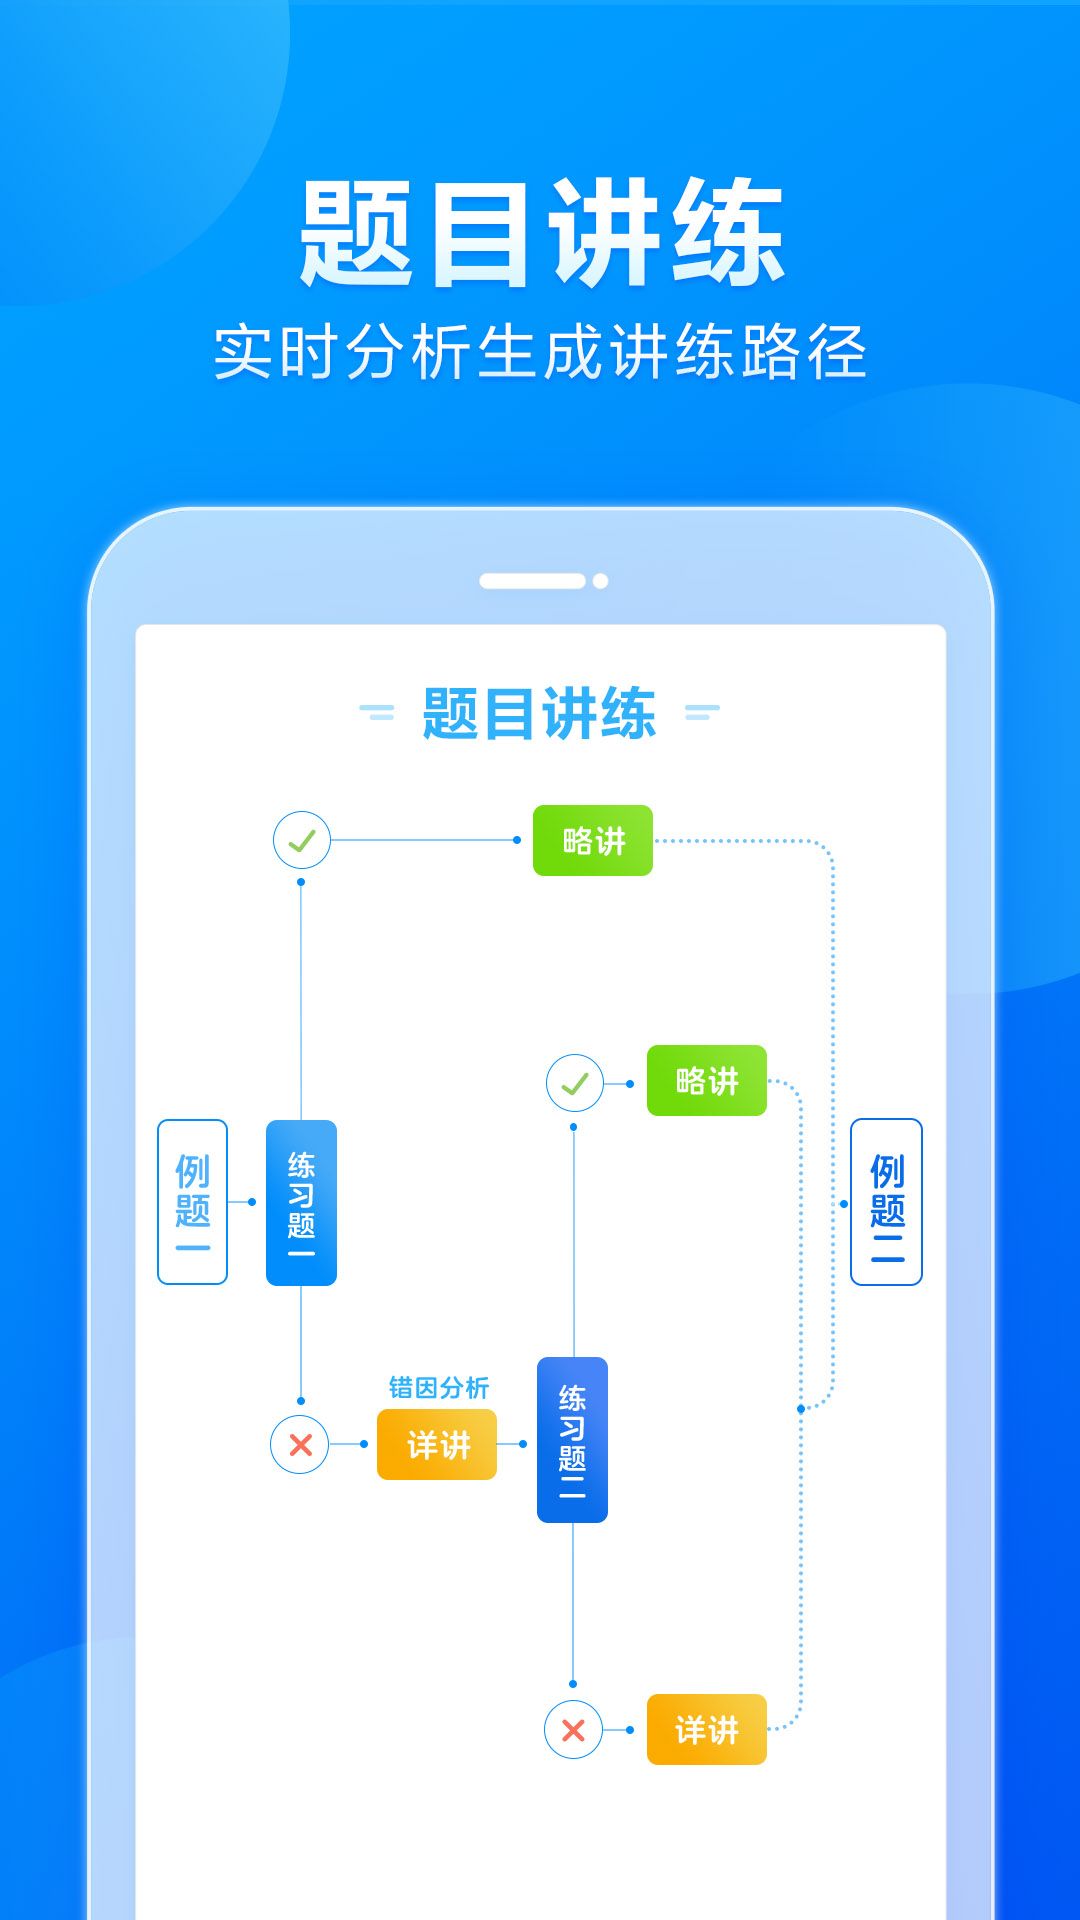 小马AI课初中版appv1.0.1